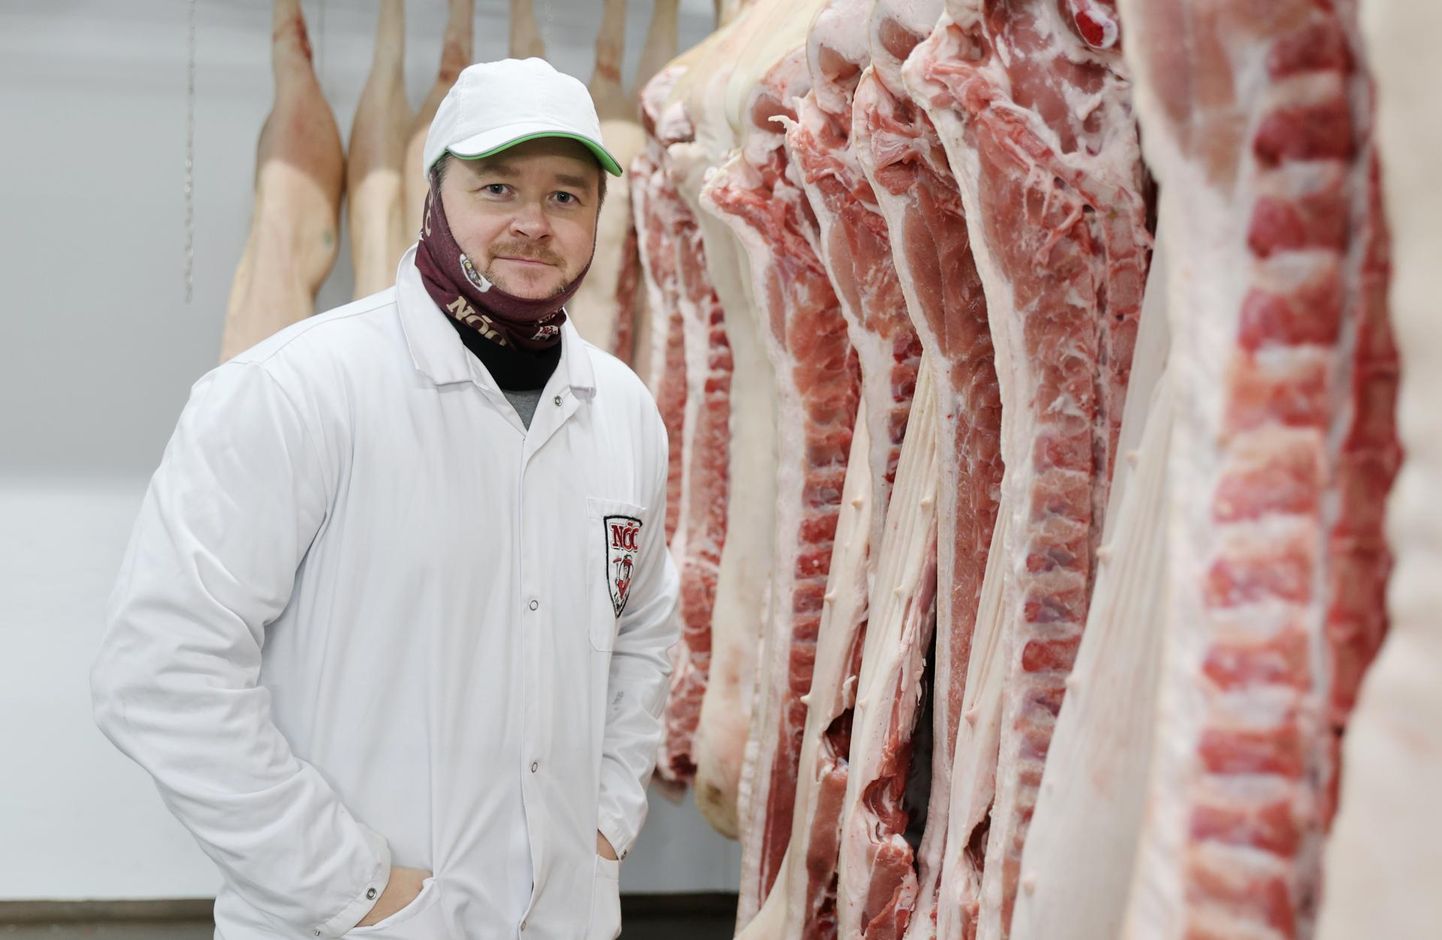 Nõo lihatööstuse tegevjuhi Ragnar Loova sõnul on ettevõte viimastel aastatel panustanud ja investeerinud üha rohkem innovatsiooni ning tööprotsesside automatiseerimisse.